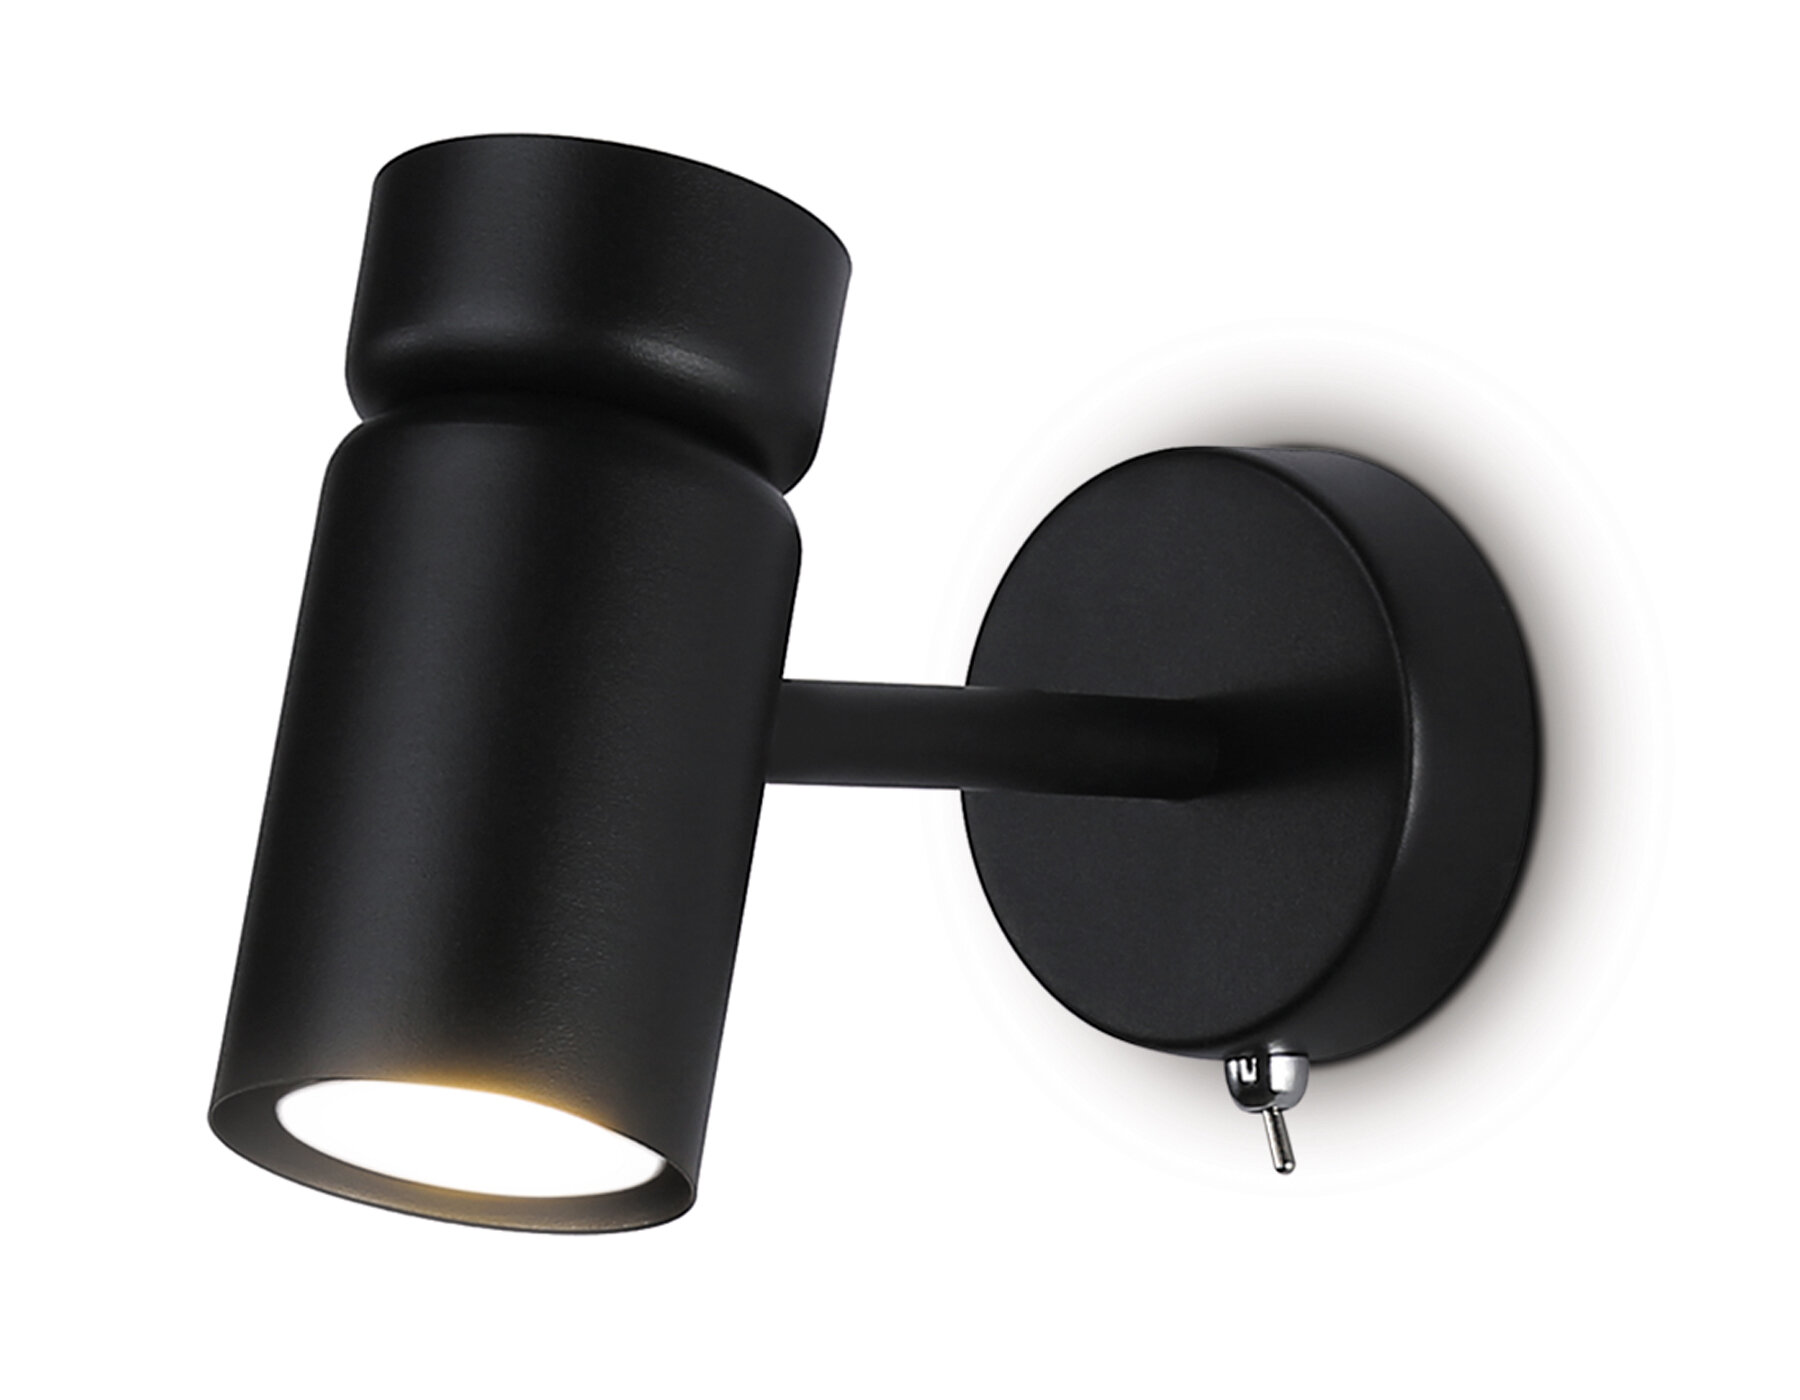 Настенный светильник с выключателем и сменной лампой GU10 TA13184 BK черный GU10 max 12W D60*L120*H150